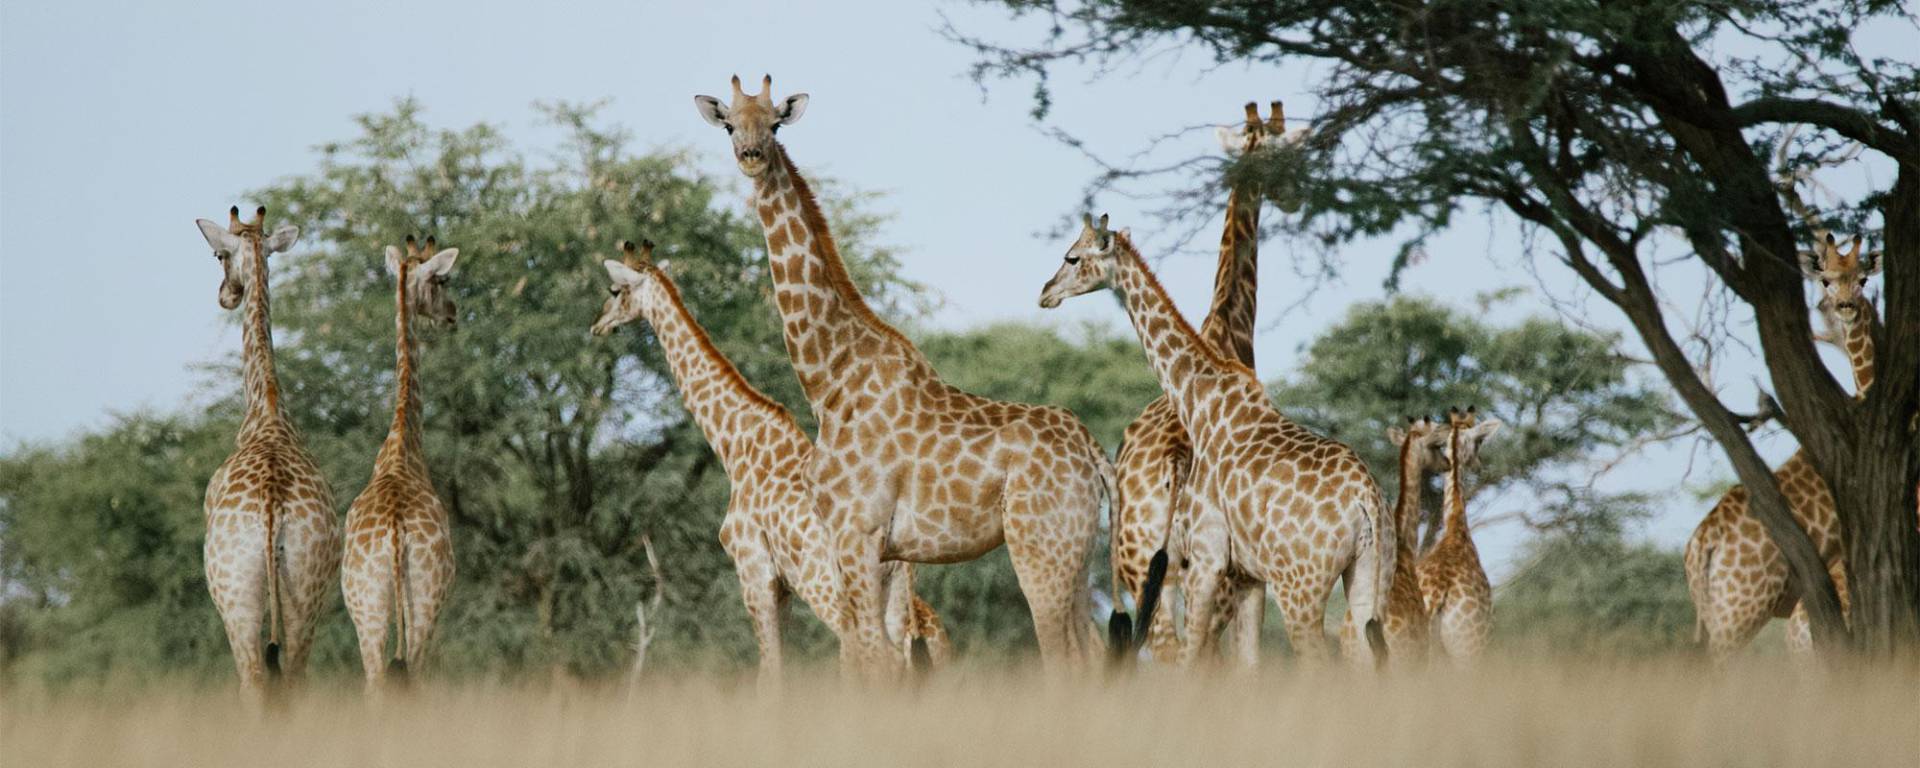 Giraffe conservation project at Kuzikus